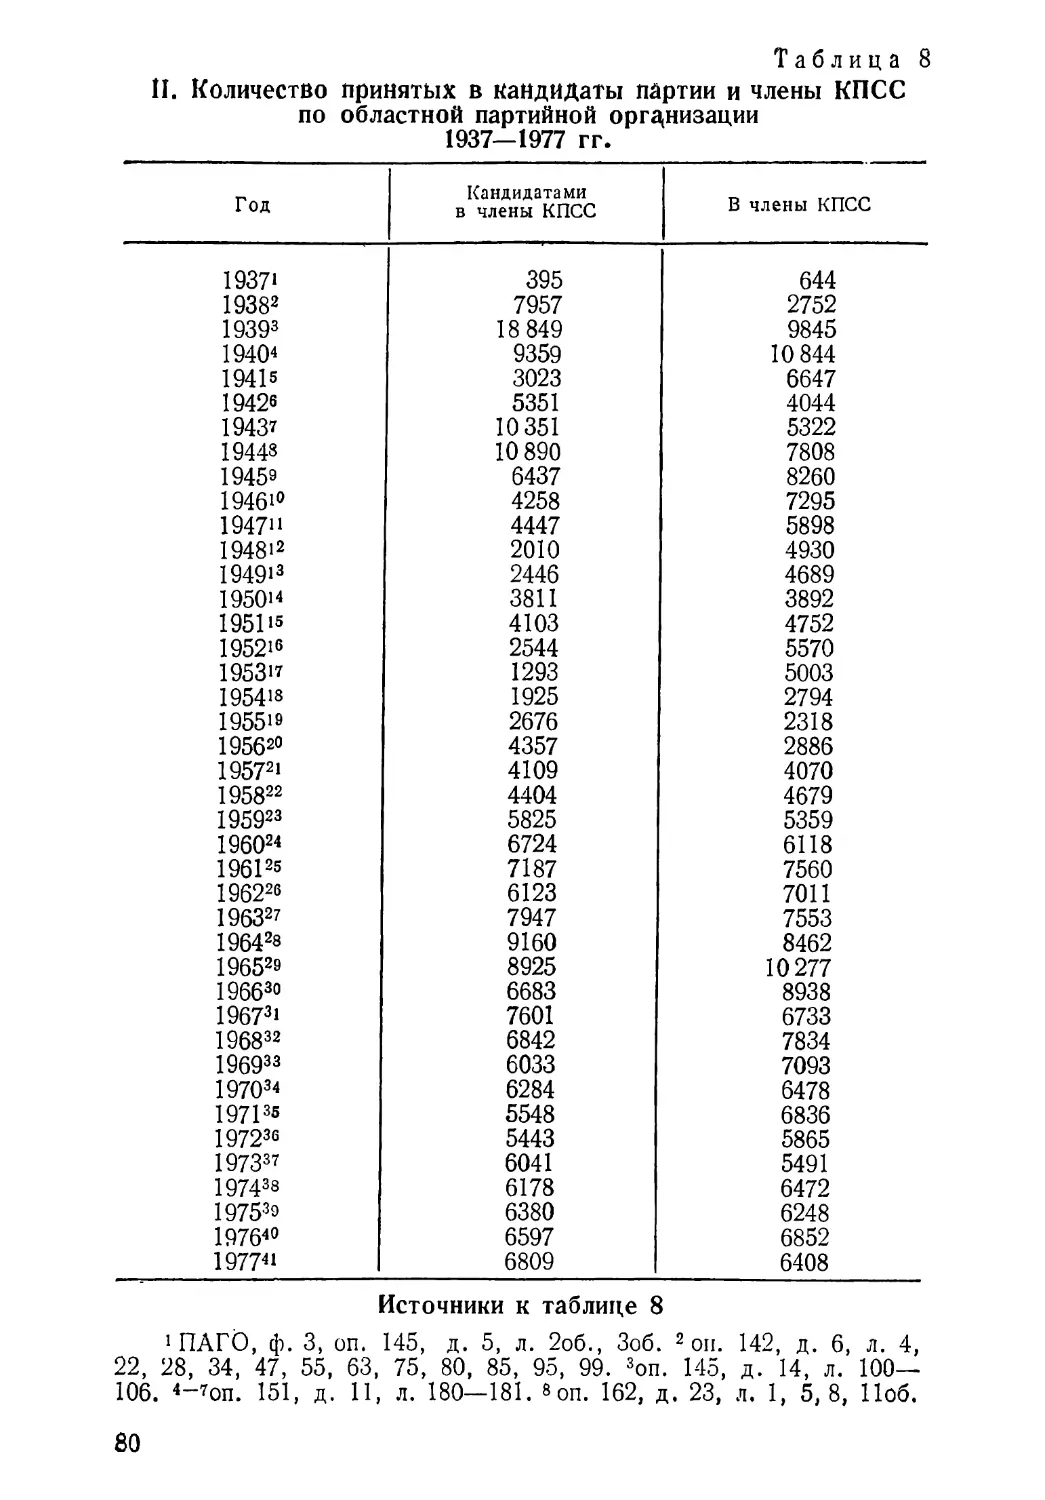 Количество принятых в кандидаты и члены КПСС по областной партийной организации 1937—1977 гг. Таблица 8